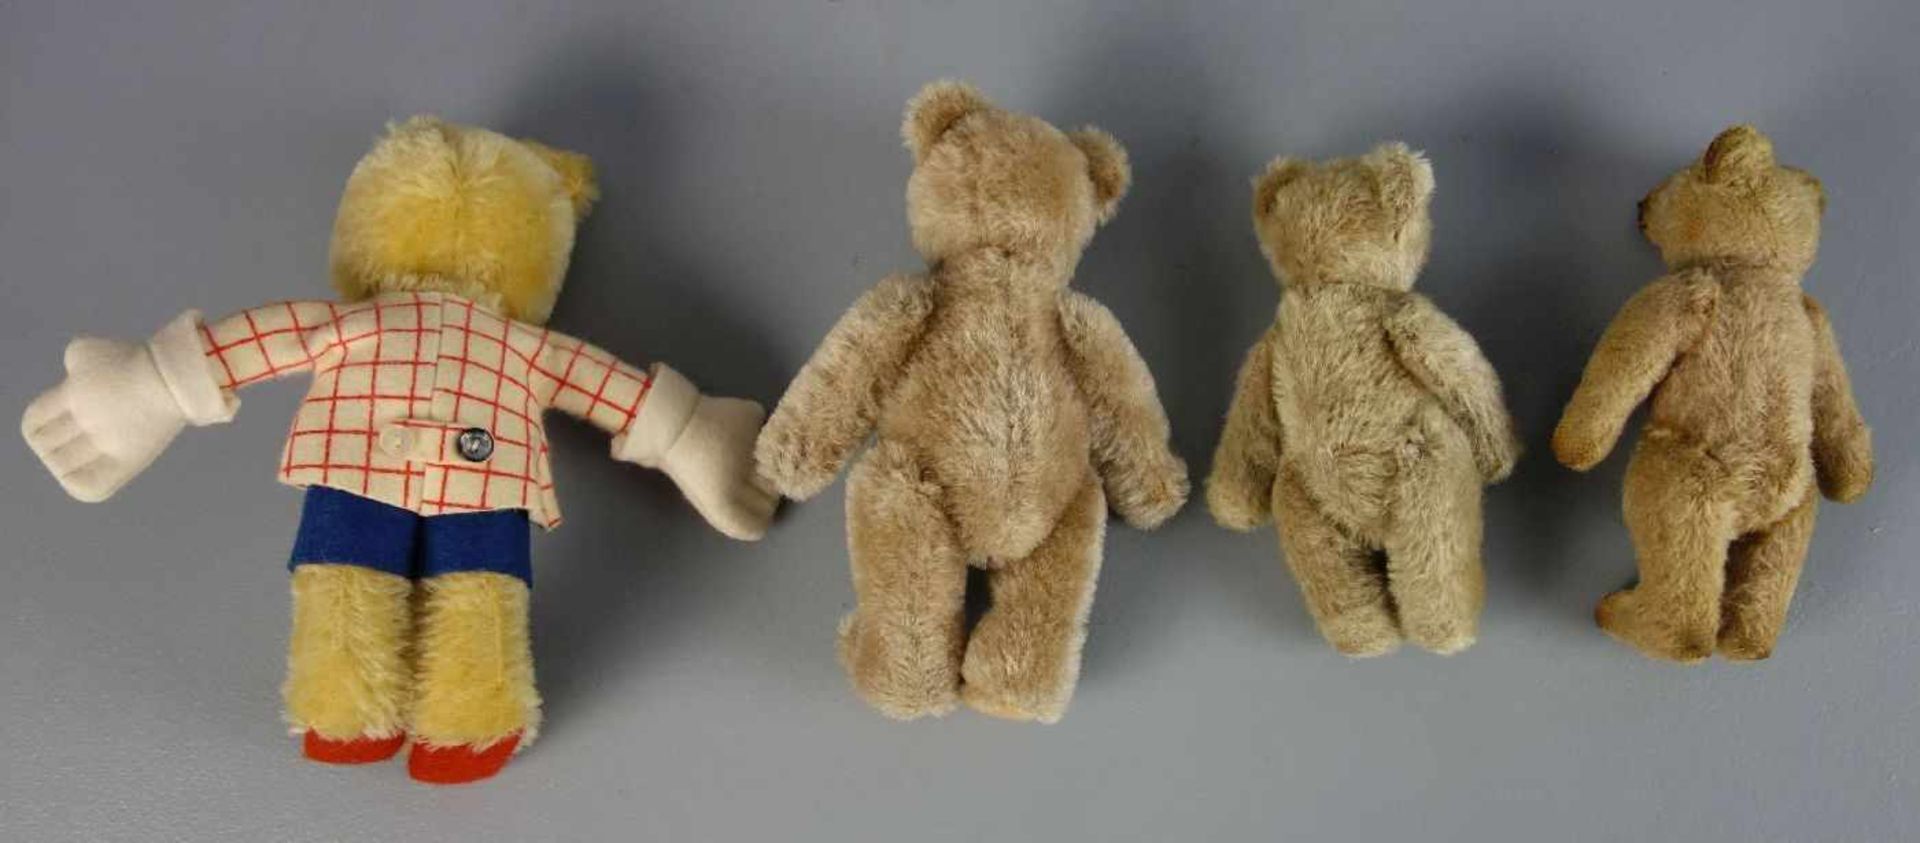 PLÜSCHTIERE / PLÜSCHFIGUREN : 4 Teddybären / Teddys / four teddy bears, unterschiedliche Alter und - Bild 2 aus 2